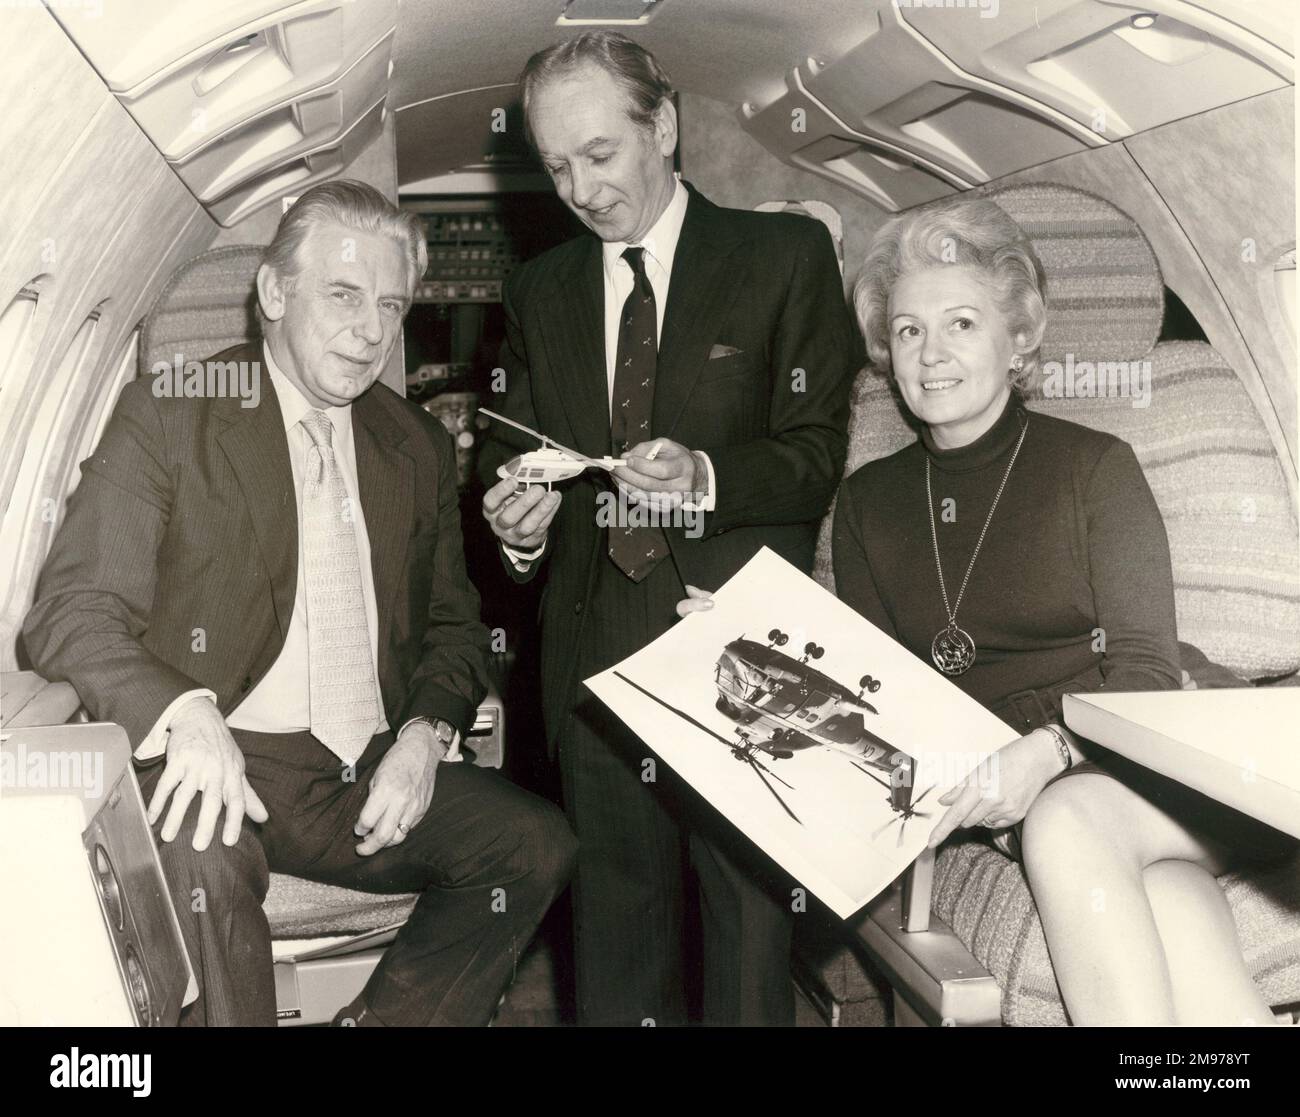 Le capitaine Eric Brown, représentant du British Helicopter Advisory Board, a visité la branche Hatfield de la Royal Aeronautical Society le 13 février 1974 avec son épouse. Pendant ce temps, ils ont inspecté la maquette du HS125-600 avec Cyril Bethwaite, directeur exécutif HS146, A Hatfield et président de la branche Hatfield. Banque D'Images